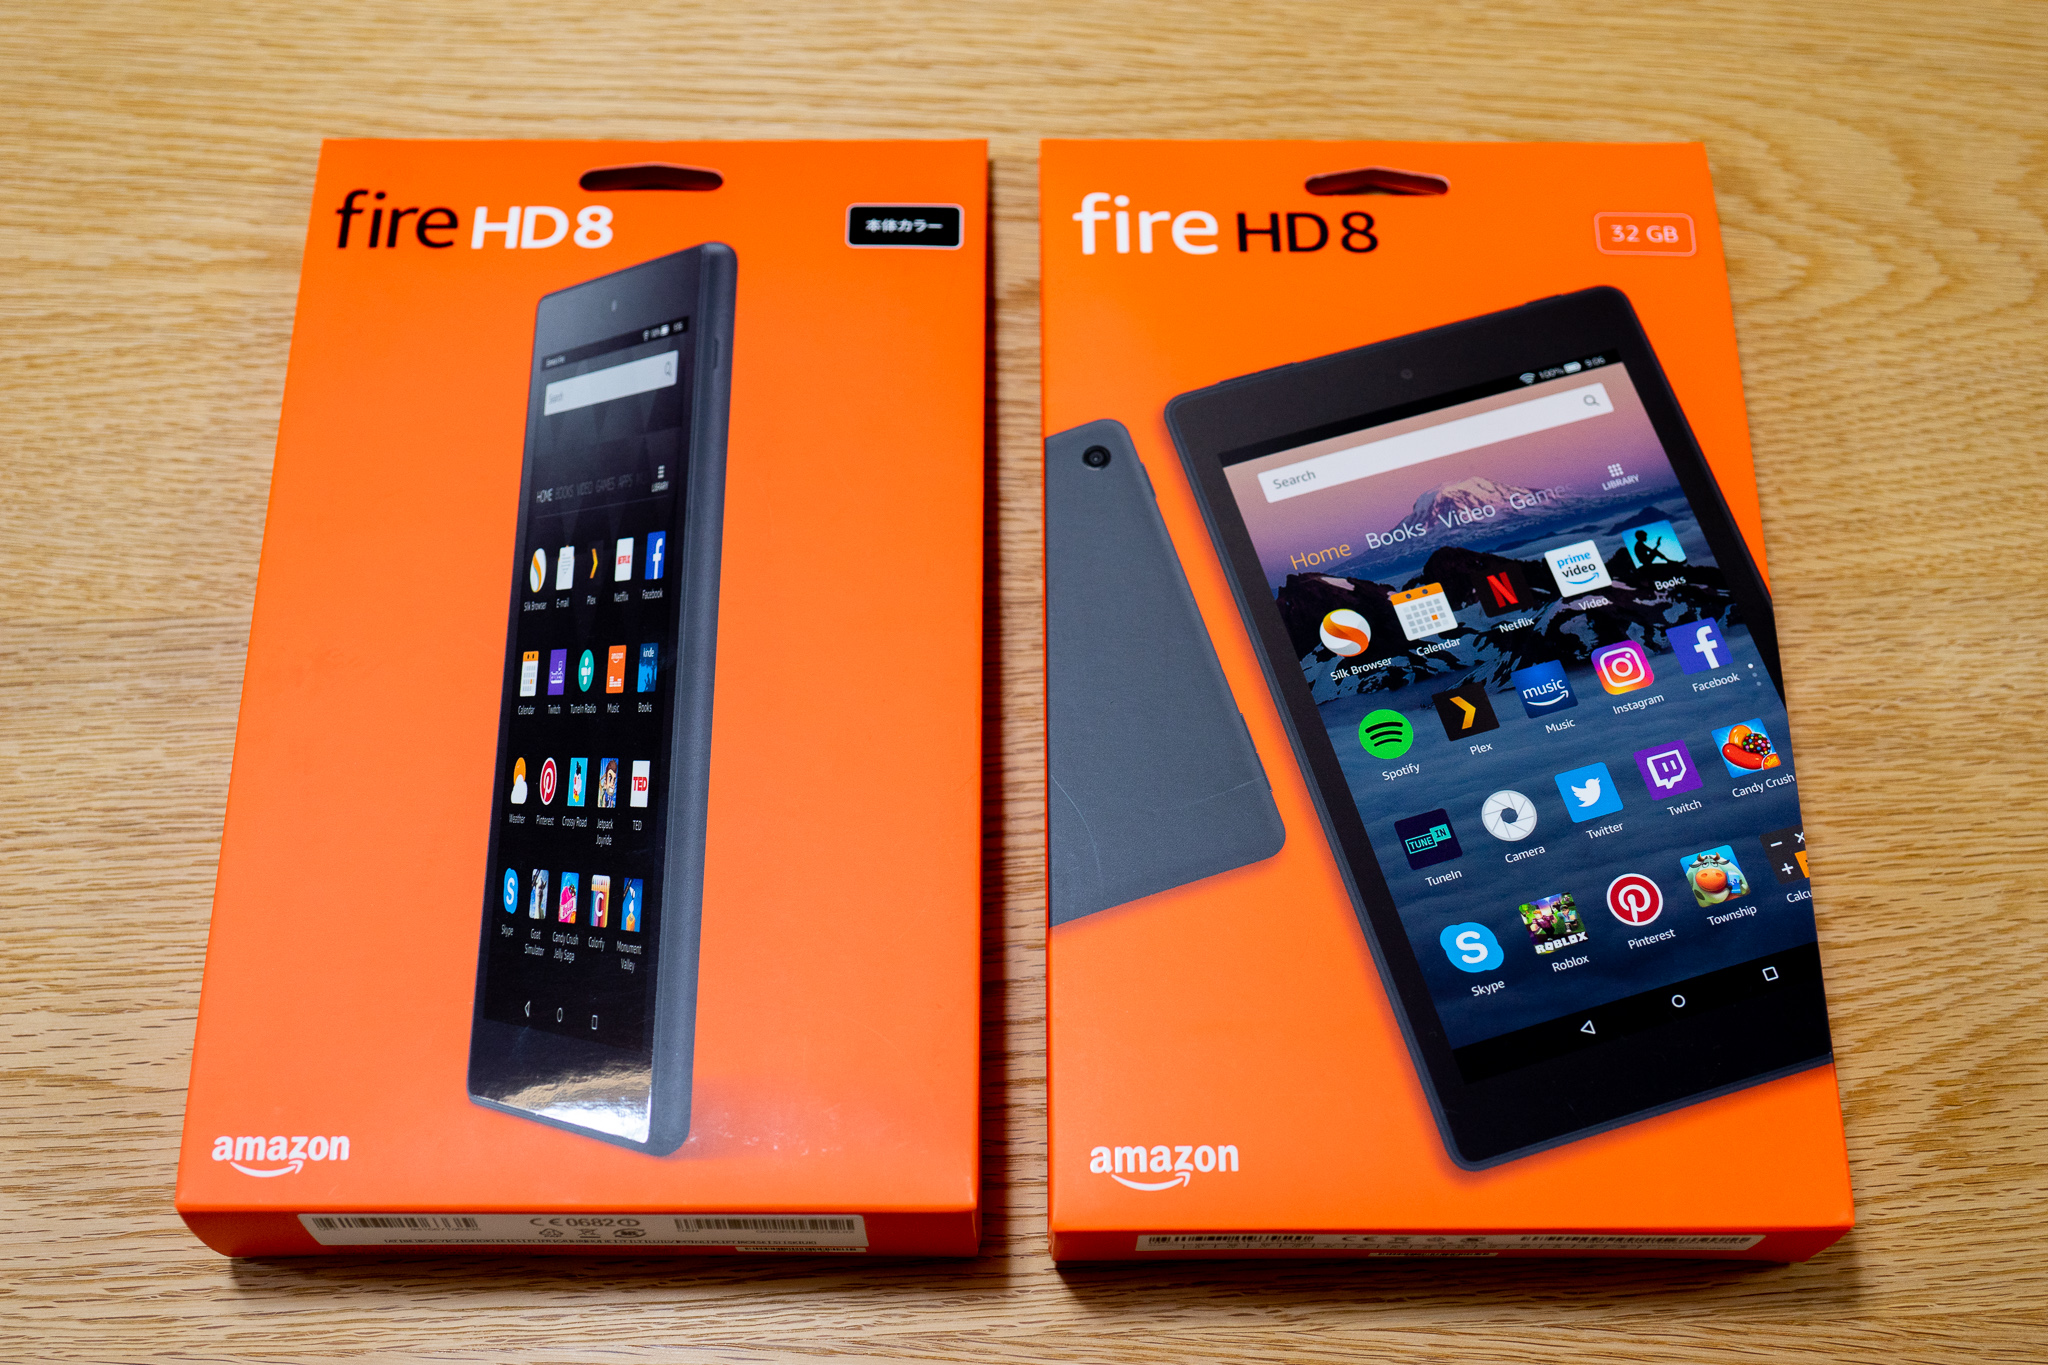 タブレット【新品】 Fire HD 8 タブレット (Newモデル 第8世代) 16GB